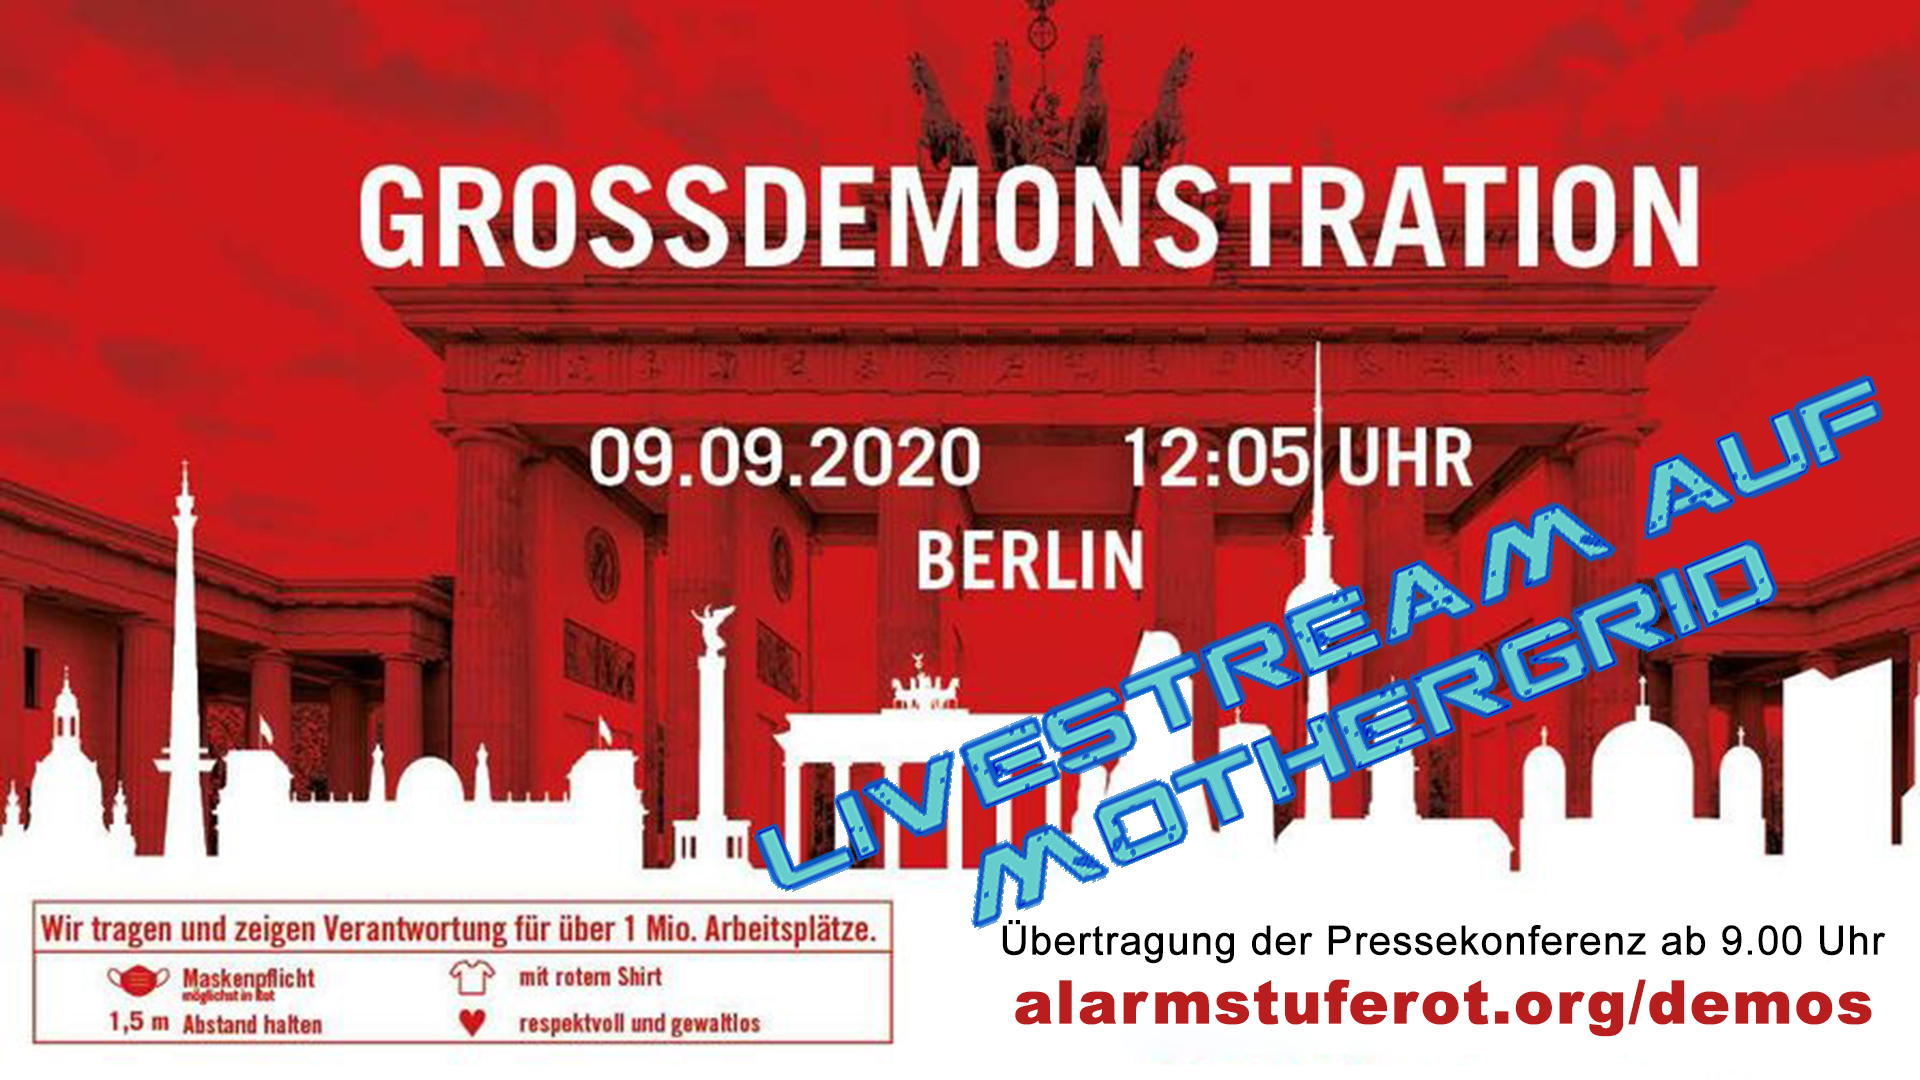 Livestream von der Pressekonferenz zur Großdemonstration von #alarmstuferot am 9. September 2020 in Berlin.